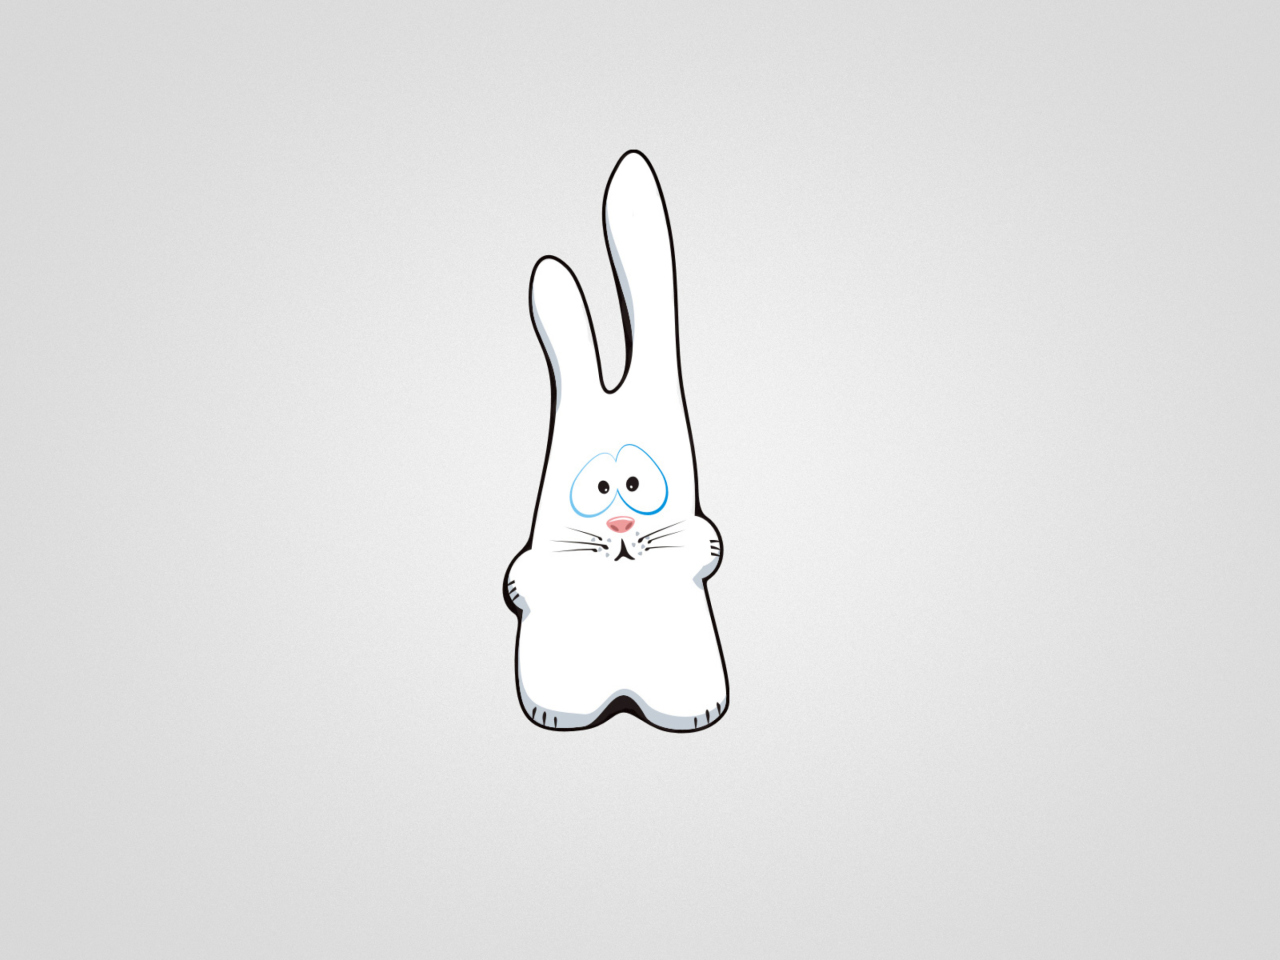 Das Funny Bunny Sketch Wallpaper 1280x960